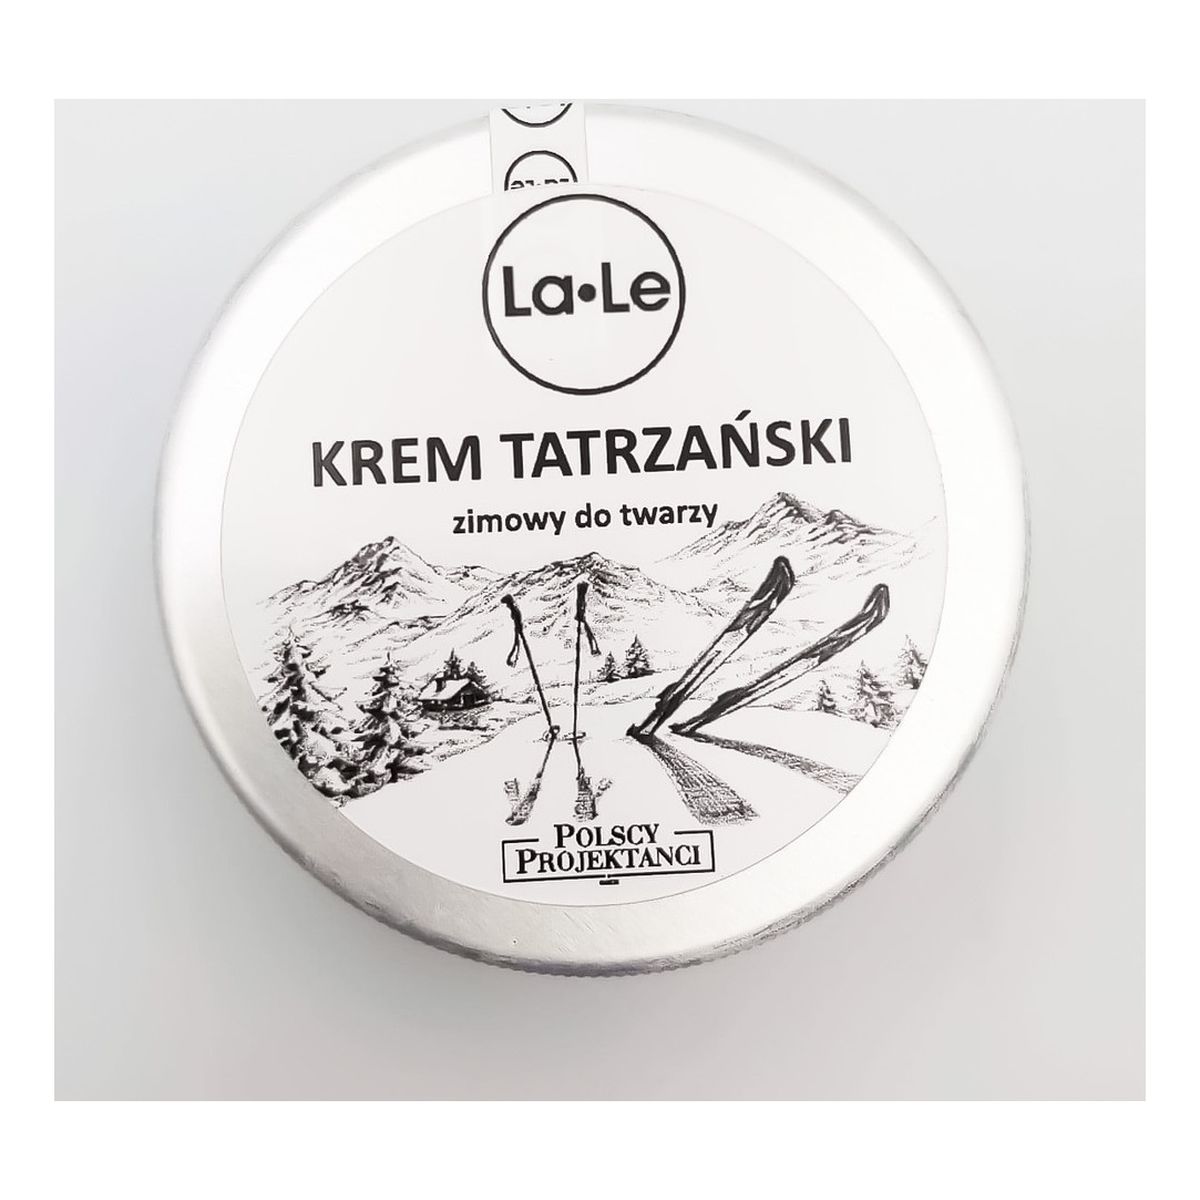 La-Le Krem tatrzański zimowy do twarzy 100ml